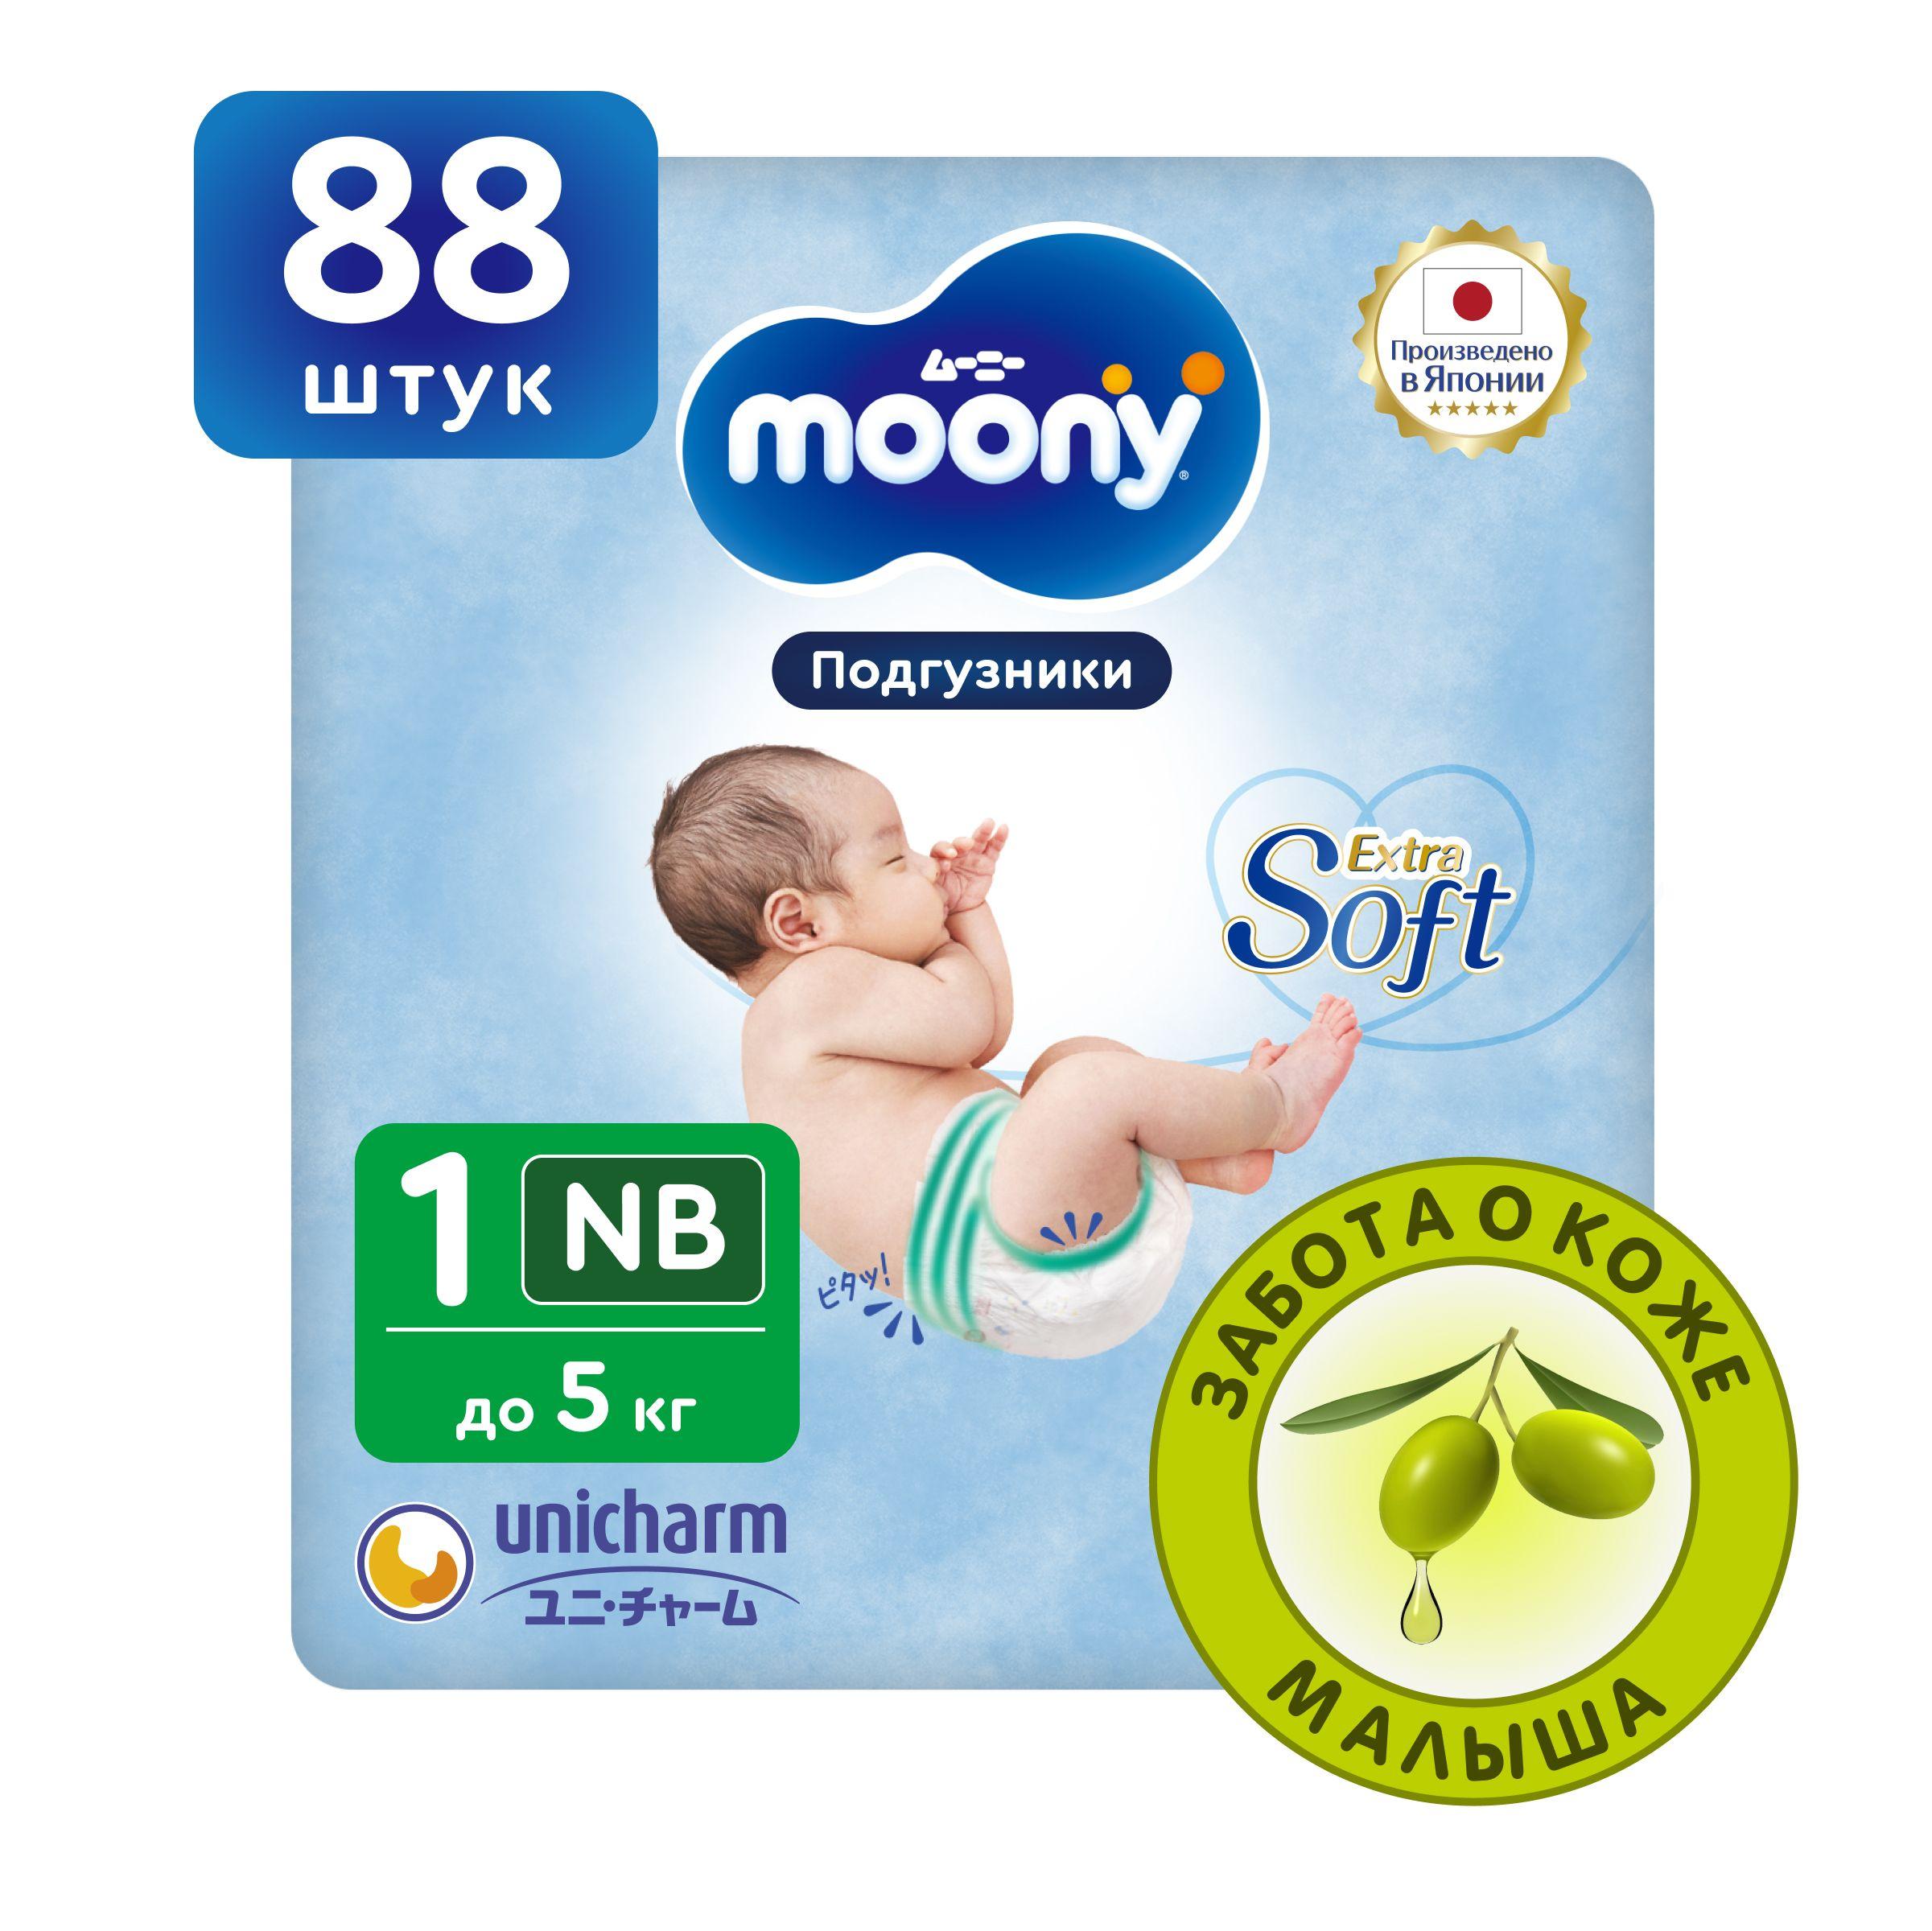 MOONY Японские подгузники для новорожденных Extra Soft 1 размер NB до 5 кг, 88 шт